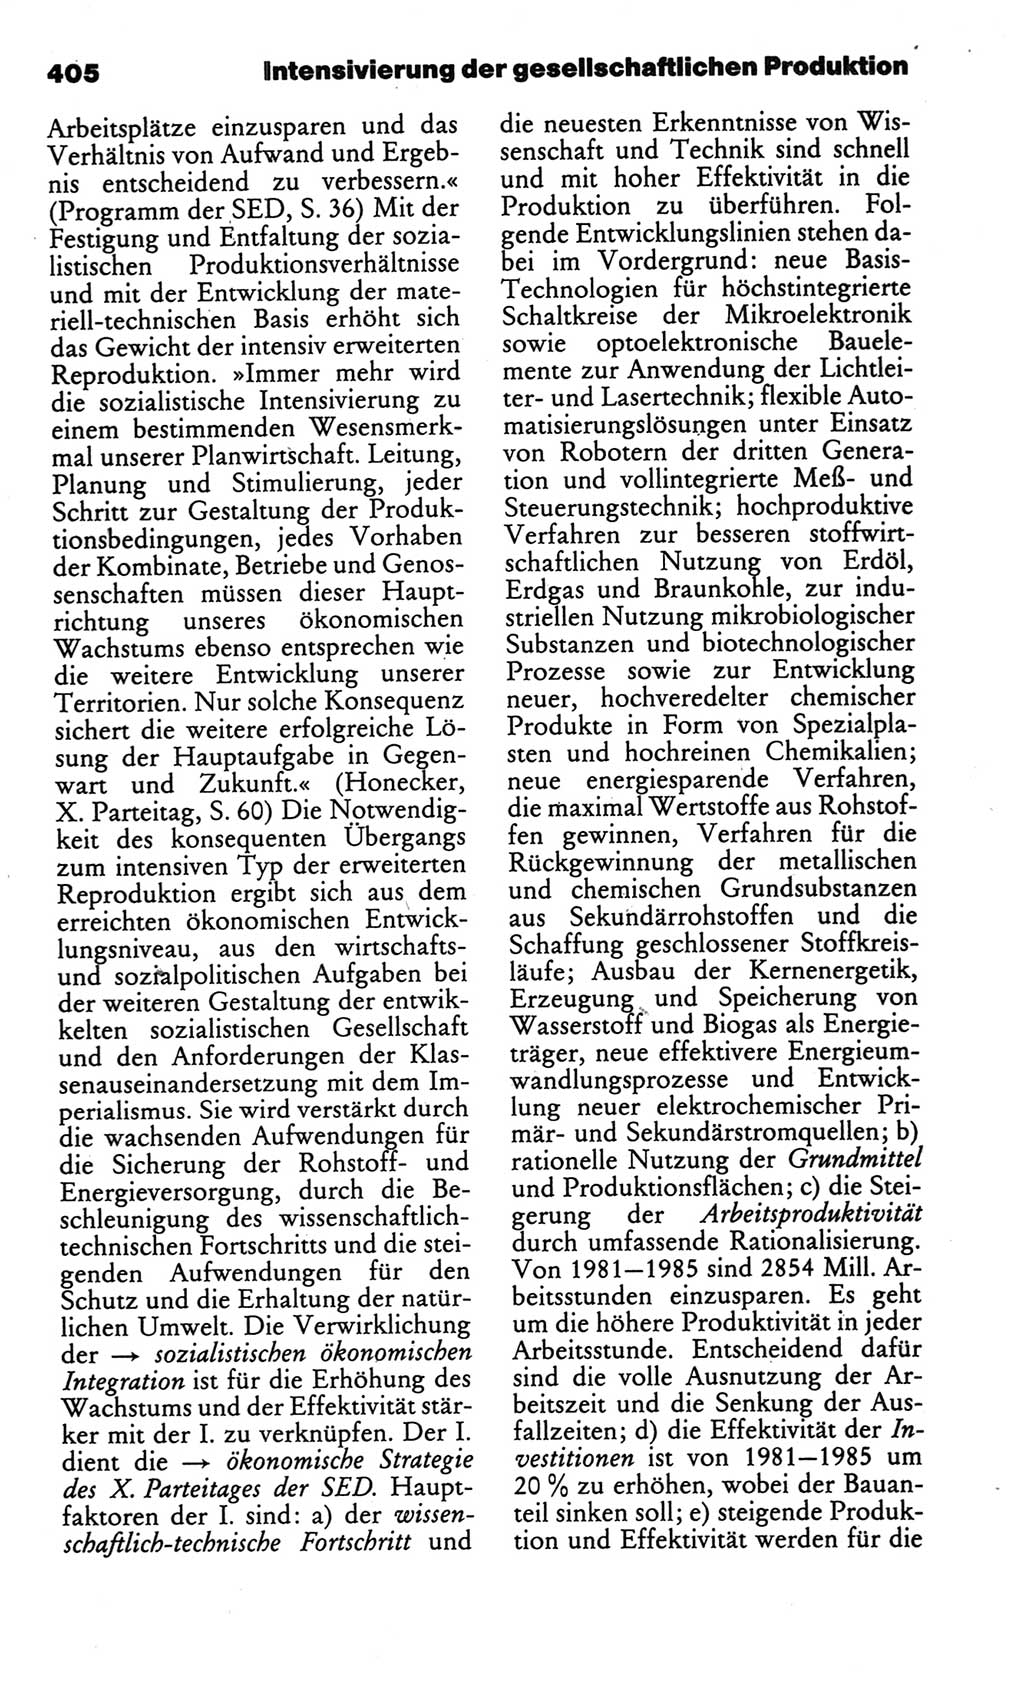 Kleines politisches Wörterbuch [Deutsche Demokratische Republik (DDR)] 1986, Seite 405 (Kl. pol. Wb. DDR 1986, S. 405)